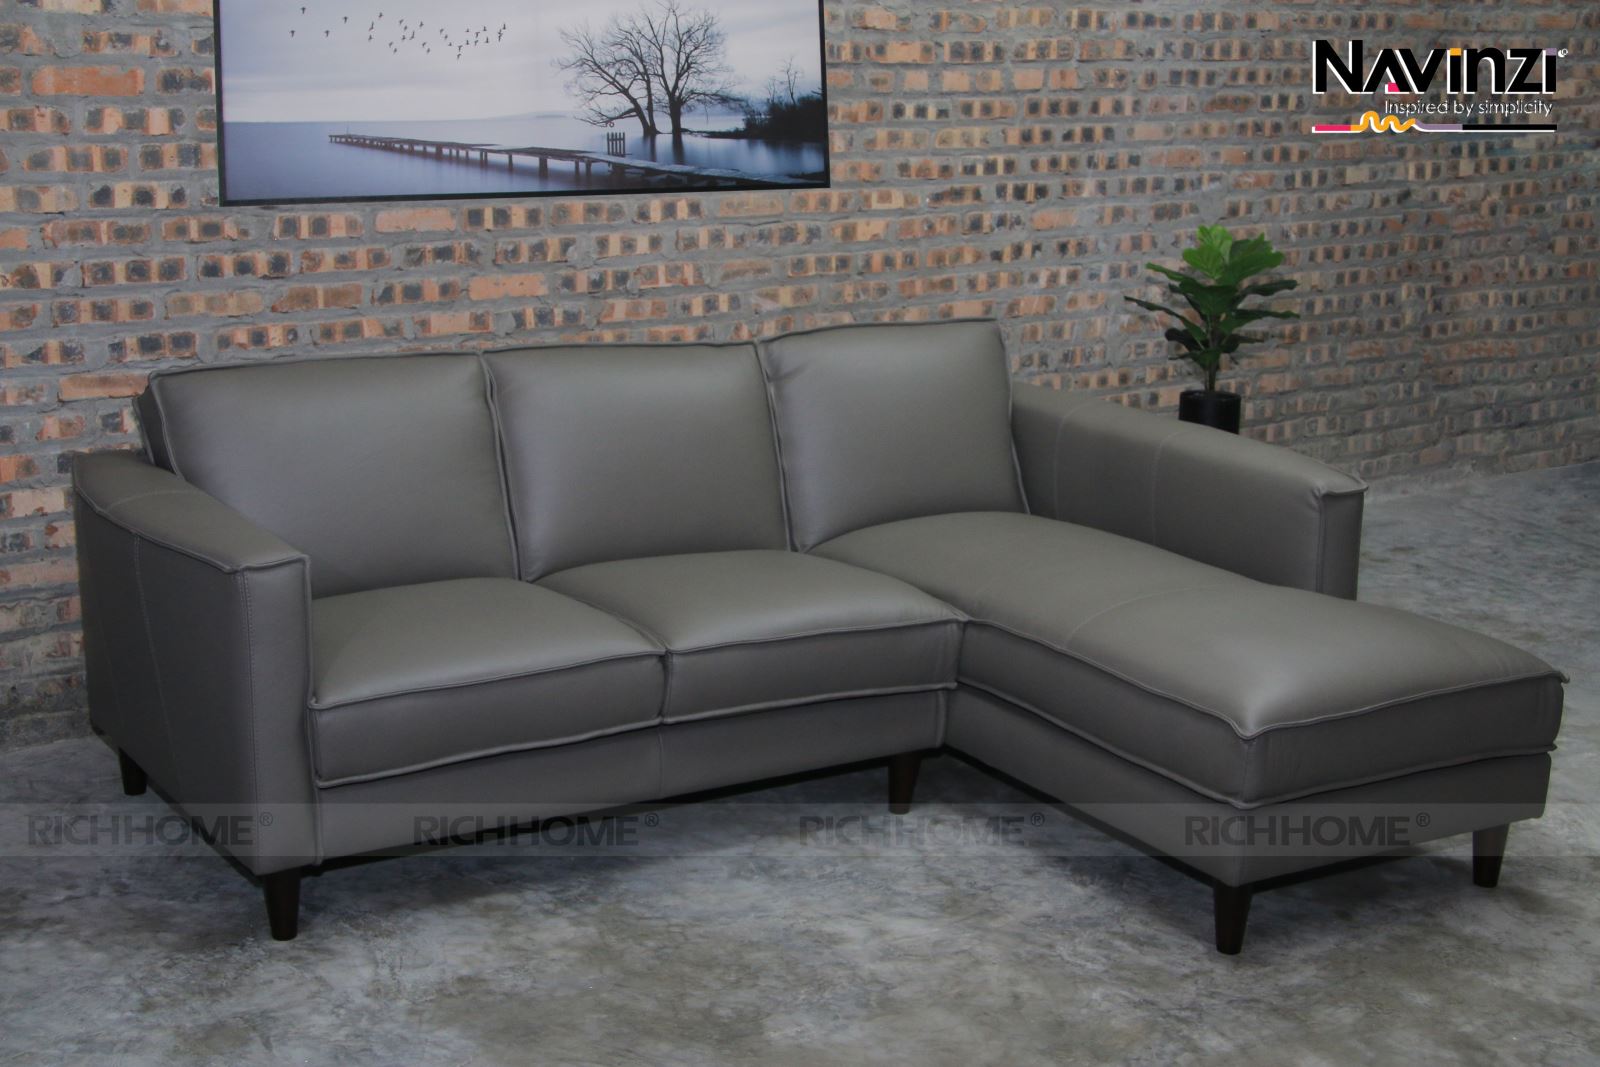 BST sofa cao cấp phòng khách mới nhất 2020 - Ảnh 16